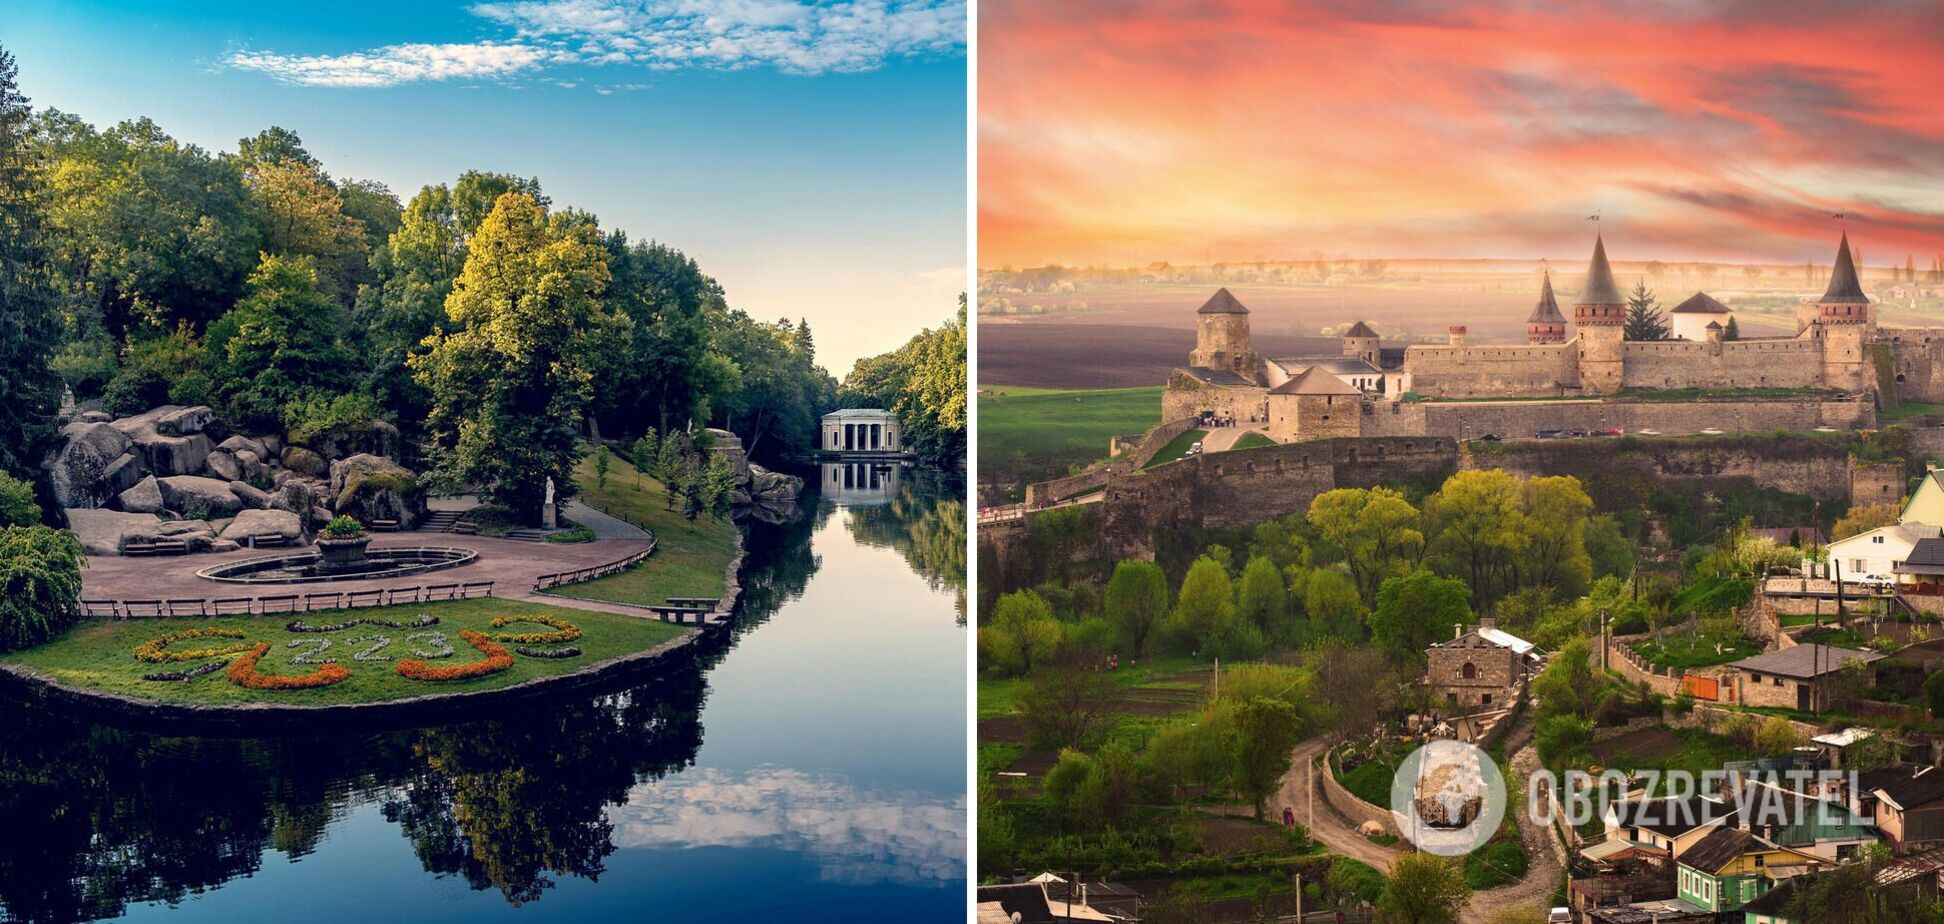 Якщо не встигли у відпустку влітку: ТОП-5 найкрасивіших місць в Україні, які можна відвідати восени. Фото